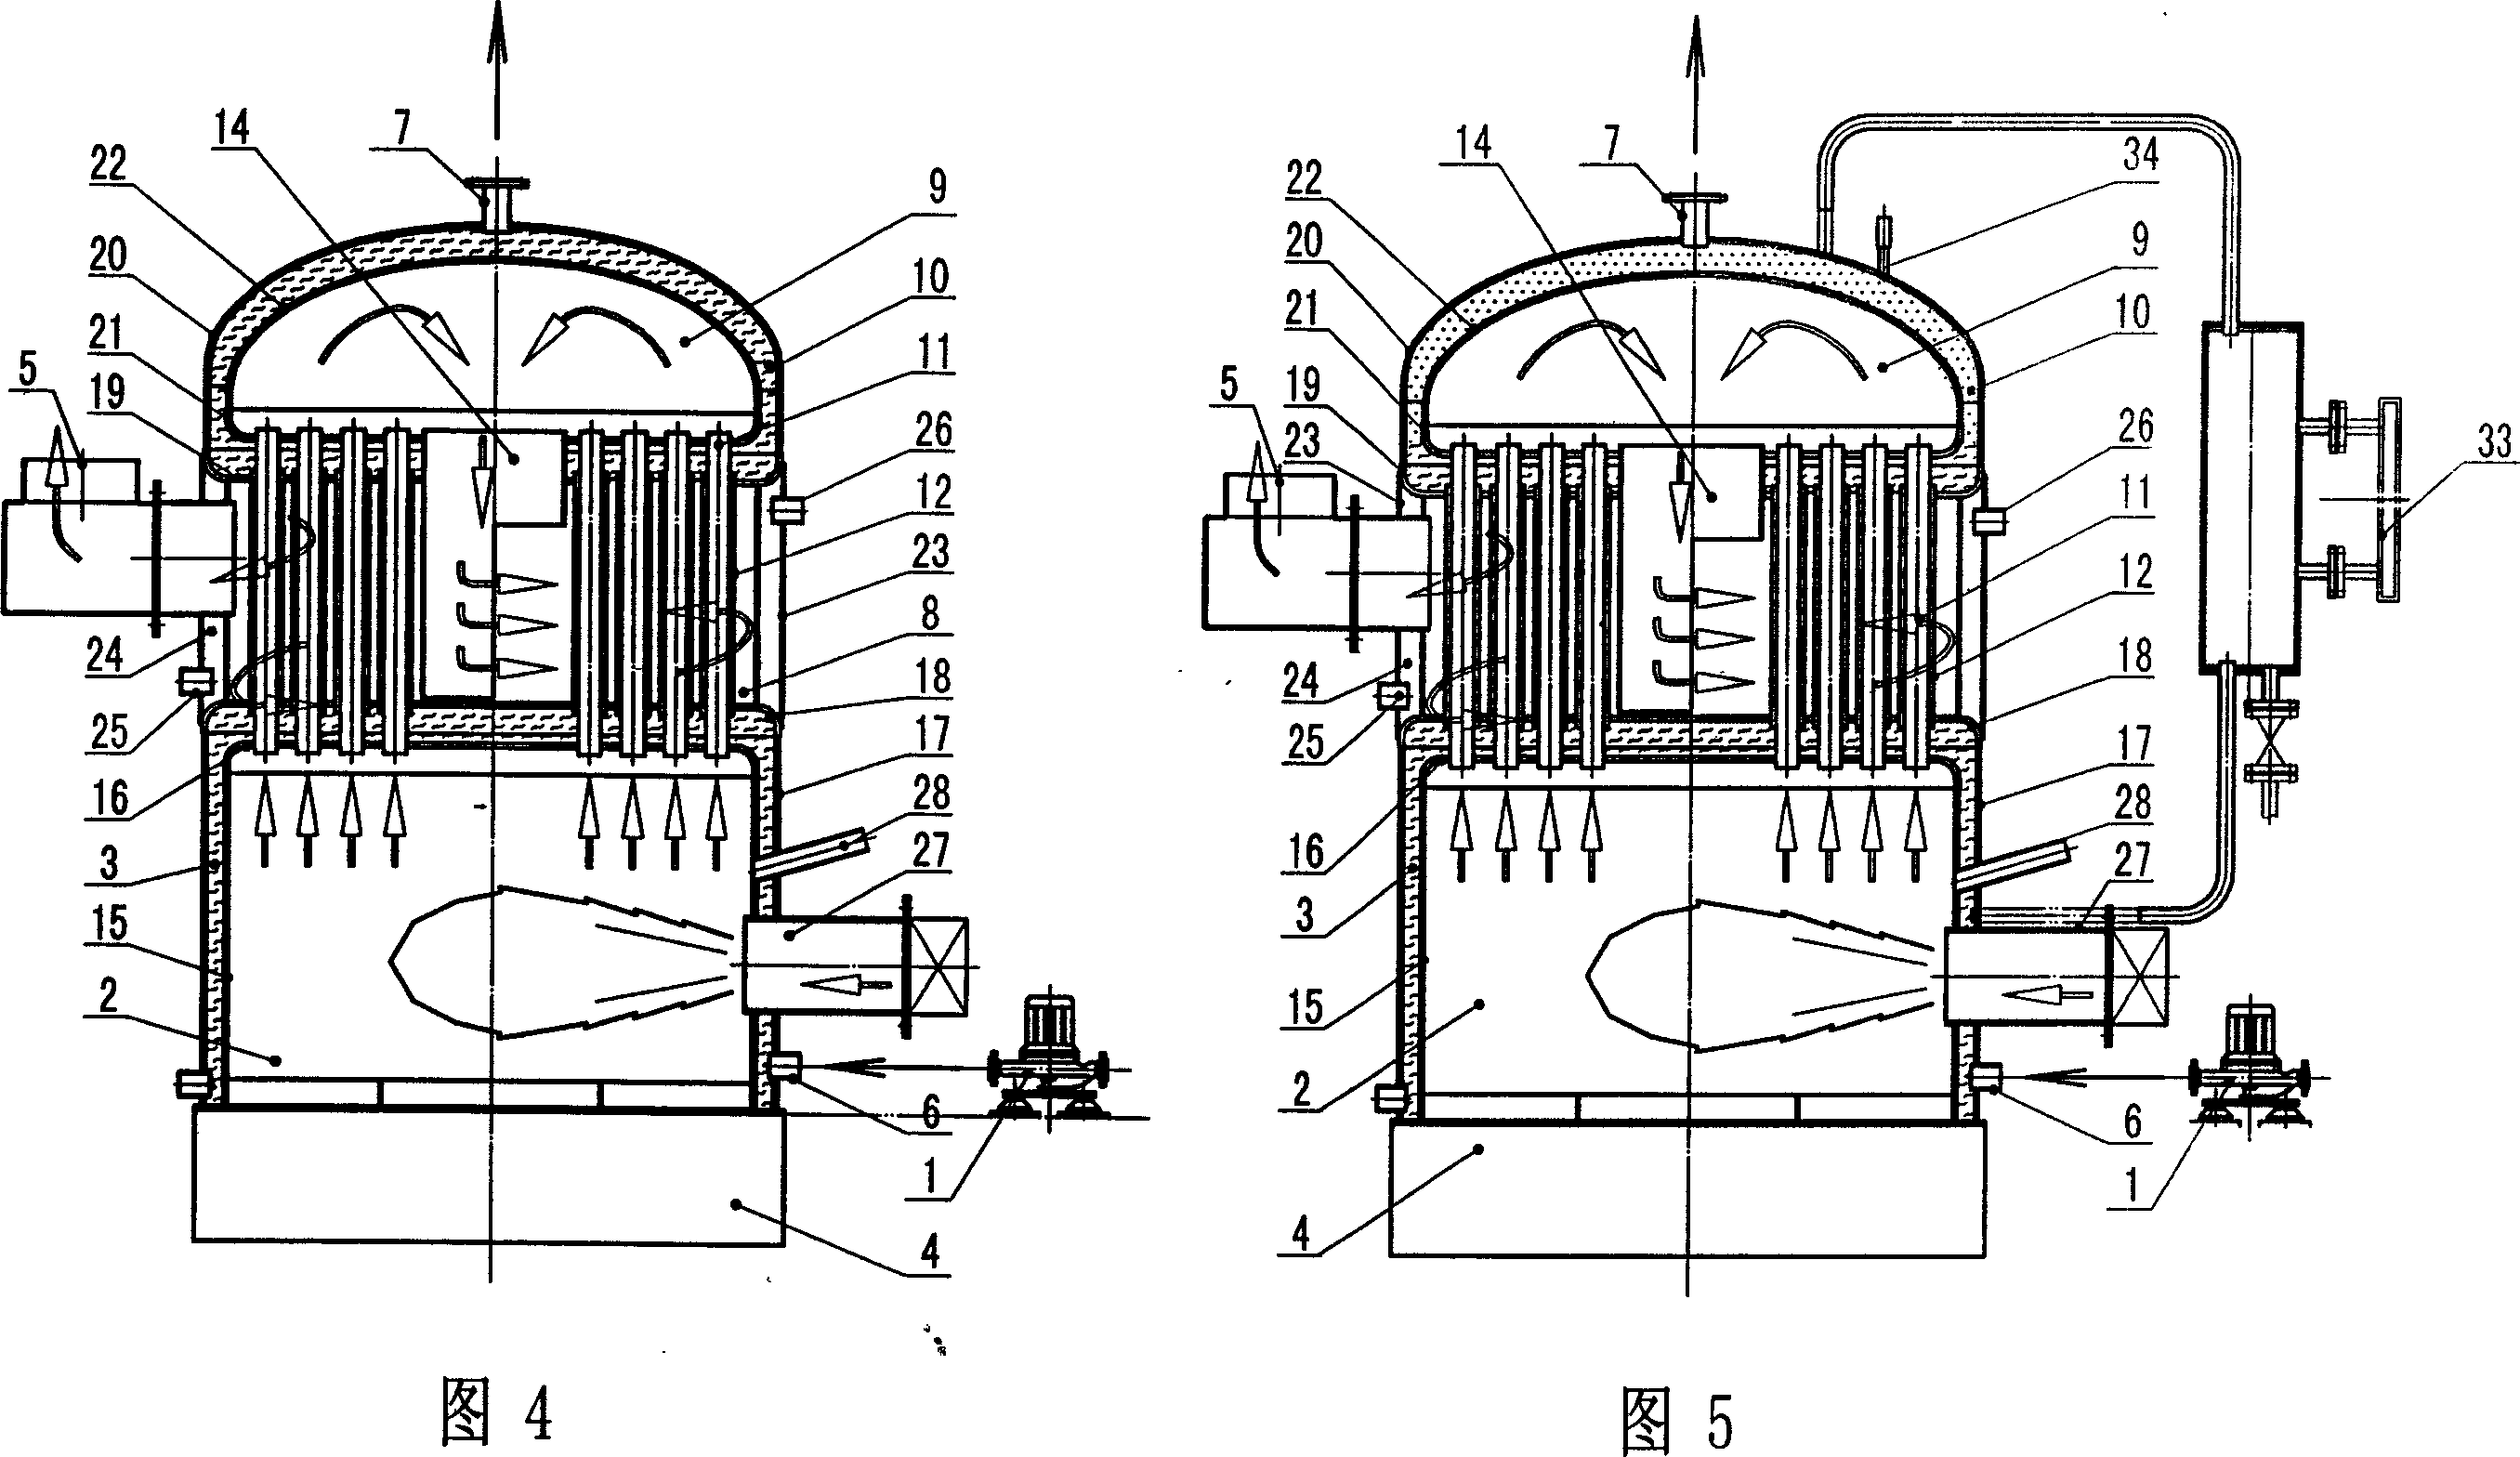 Casing tube boiler